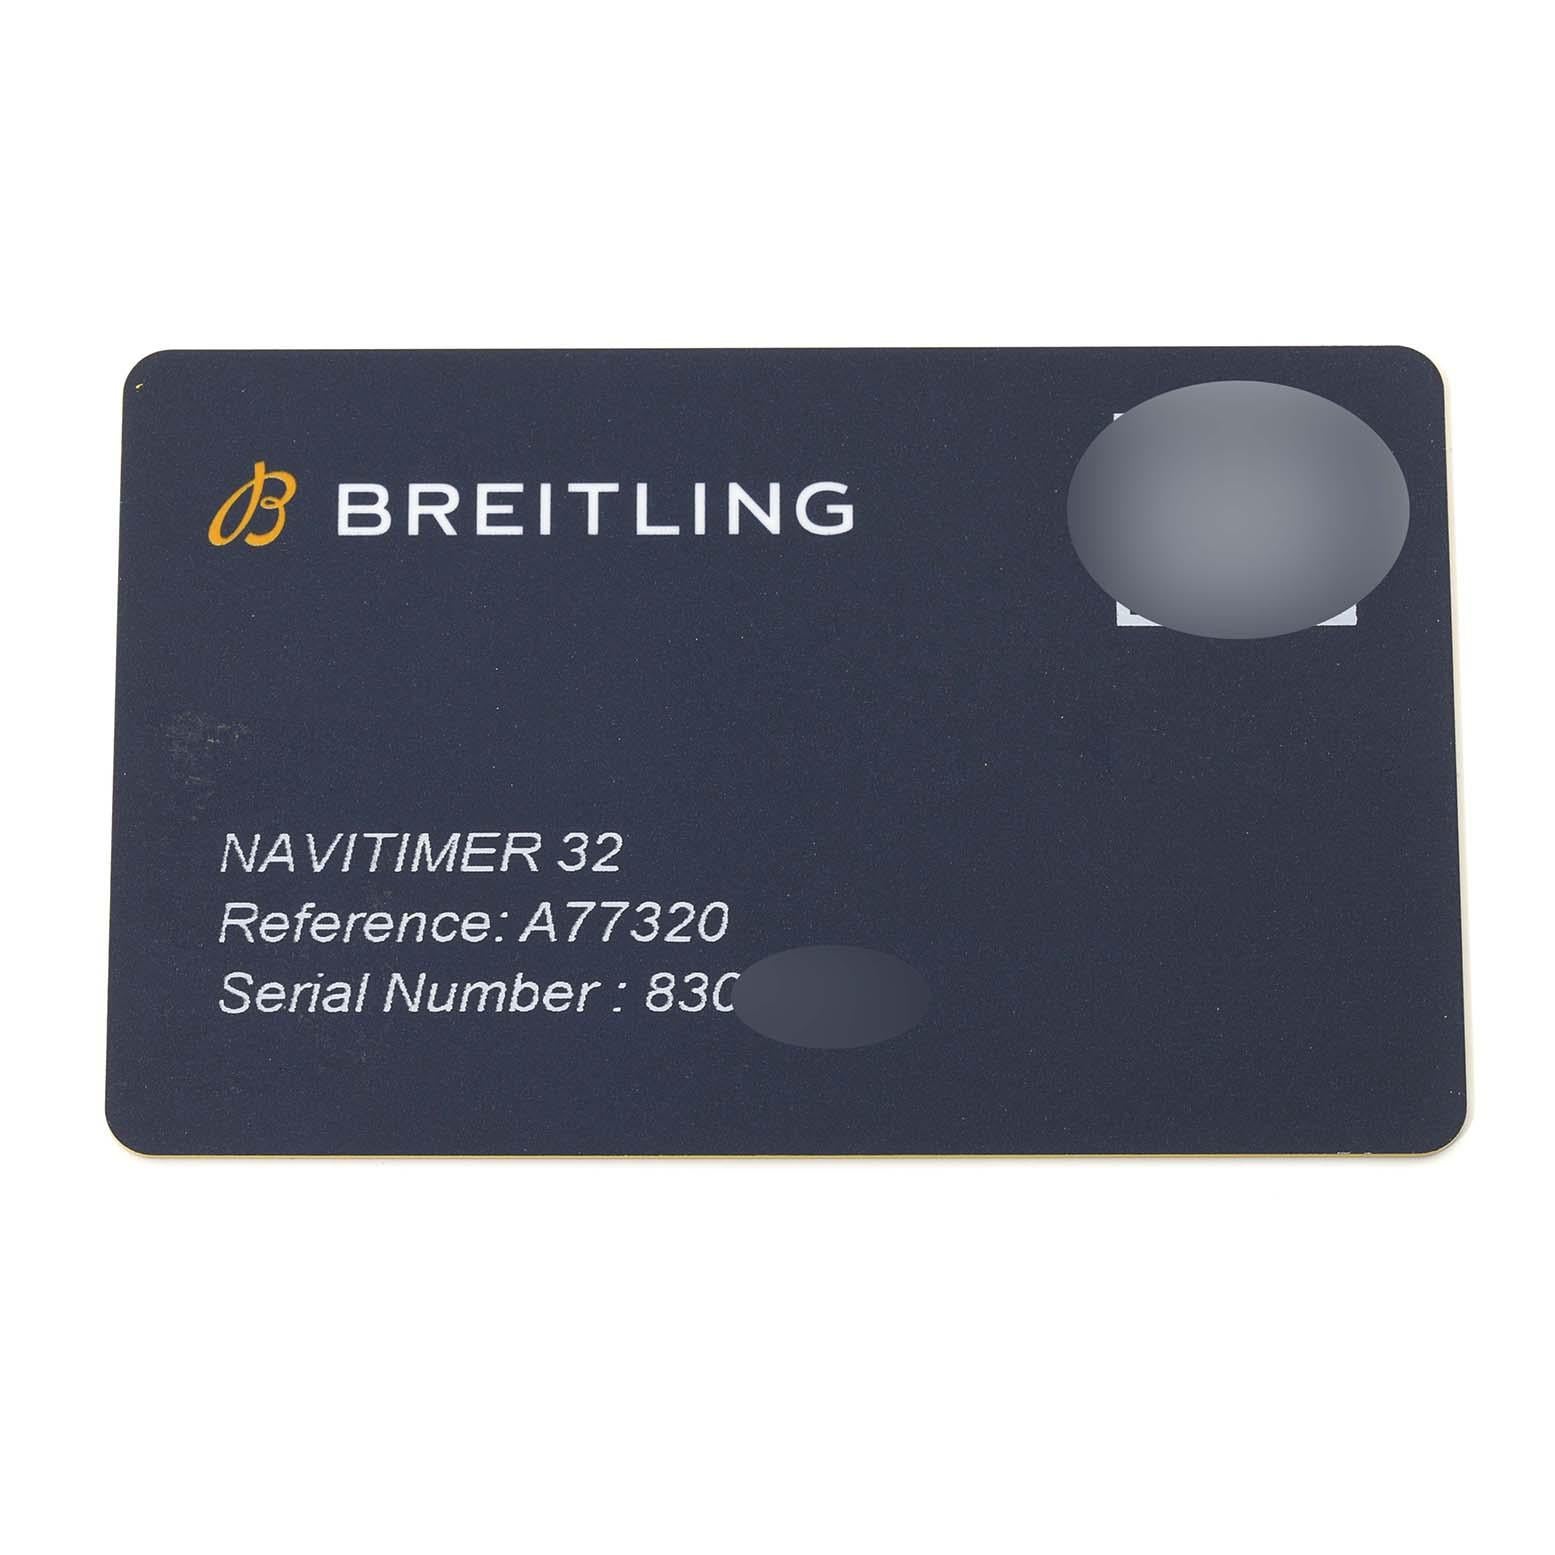 Breitling Navitimer 32 Perlmutt Diamant-Zifferblatt Stahl Damenuhr A77320 Box Card. Thermokompensiertes SuperQuartz?-Uhrwerk. Gehäuse aus Edelstahl mit einem Durchmesser von 32 mm. Lünette aus rostfreiem Stahl. Kratzfestes Saphirglas.